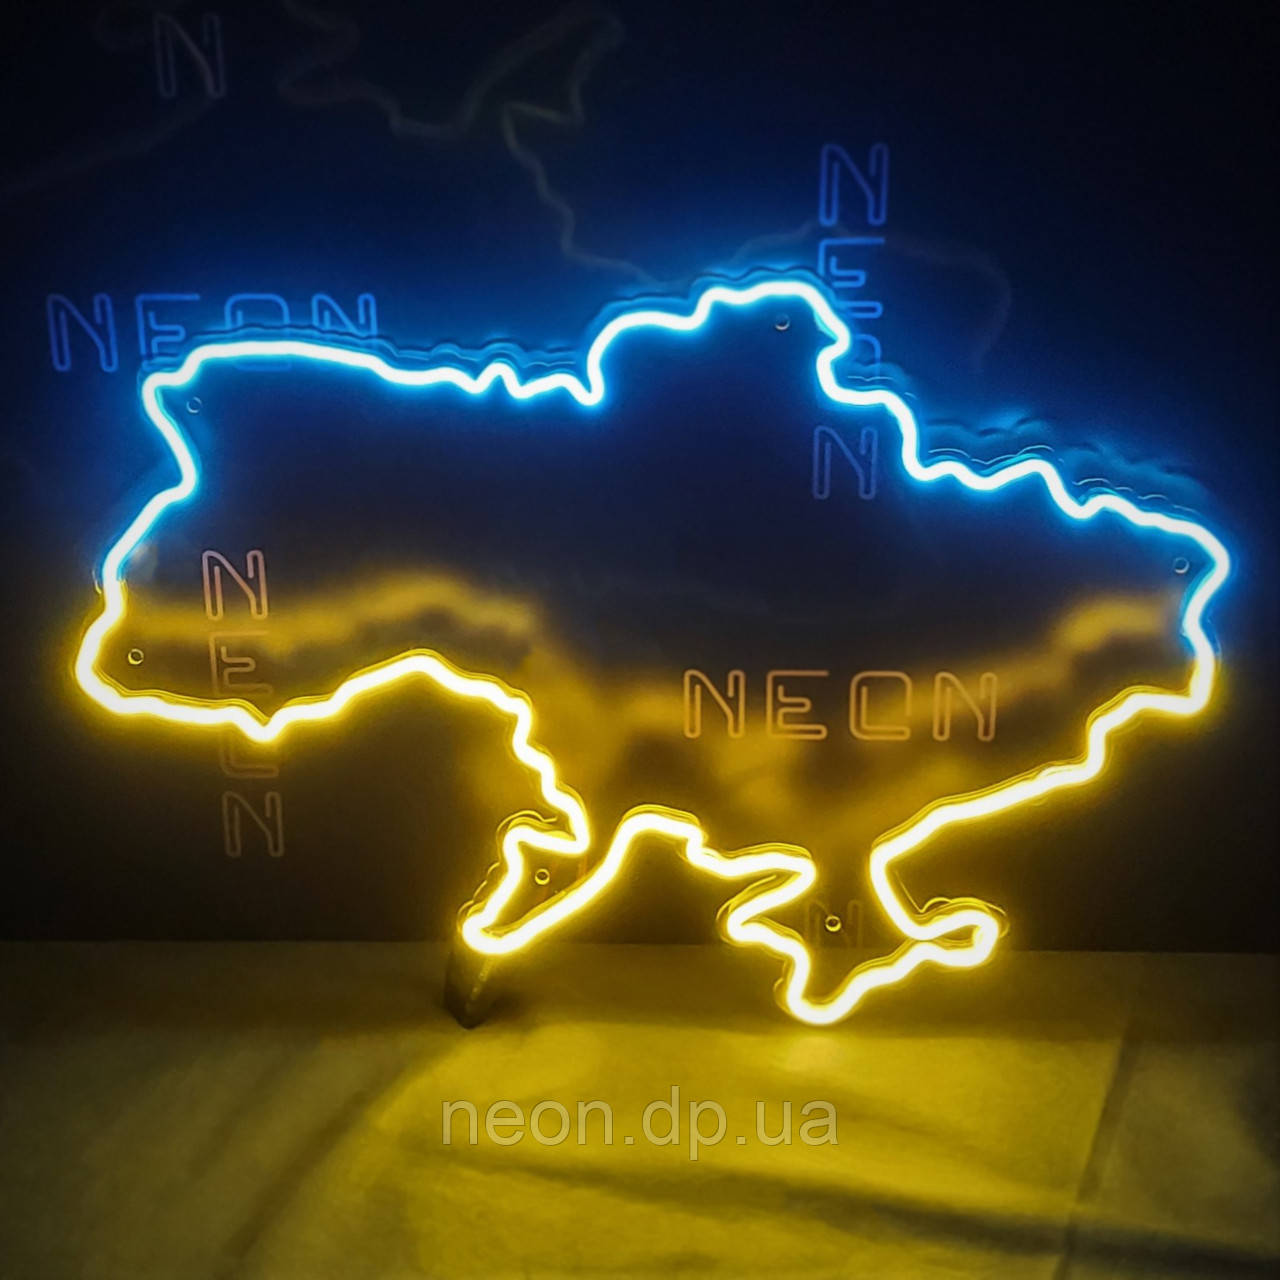 Неонова вивіска "Карта України"